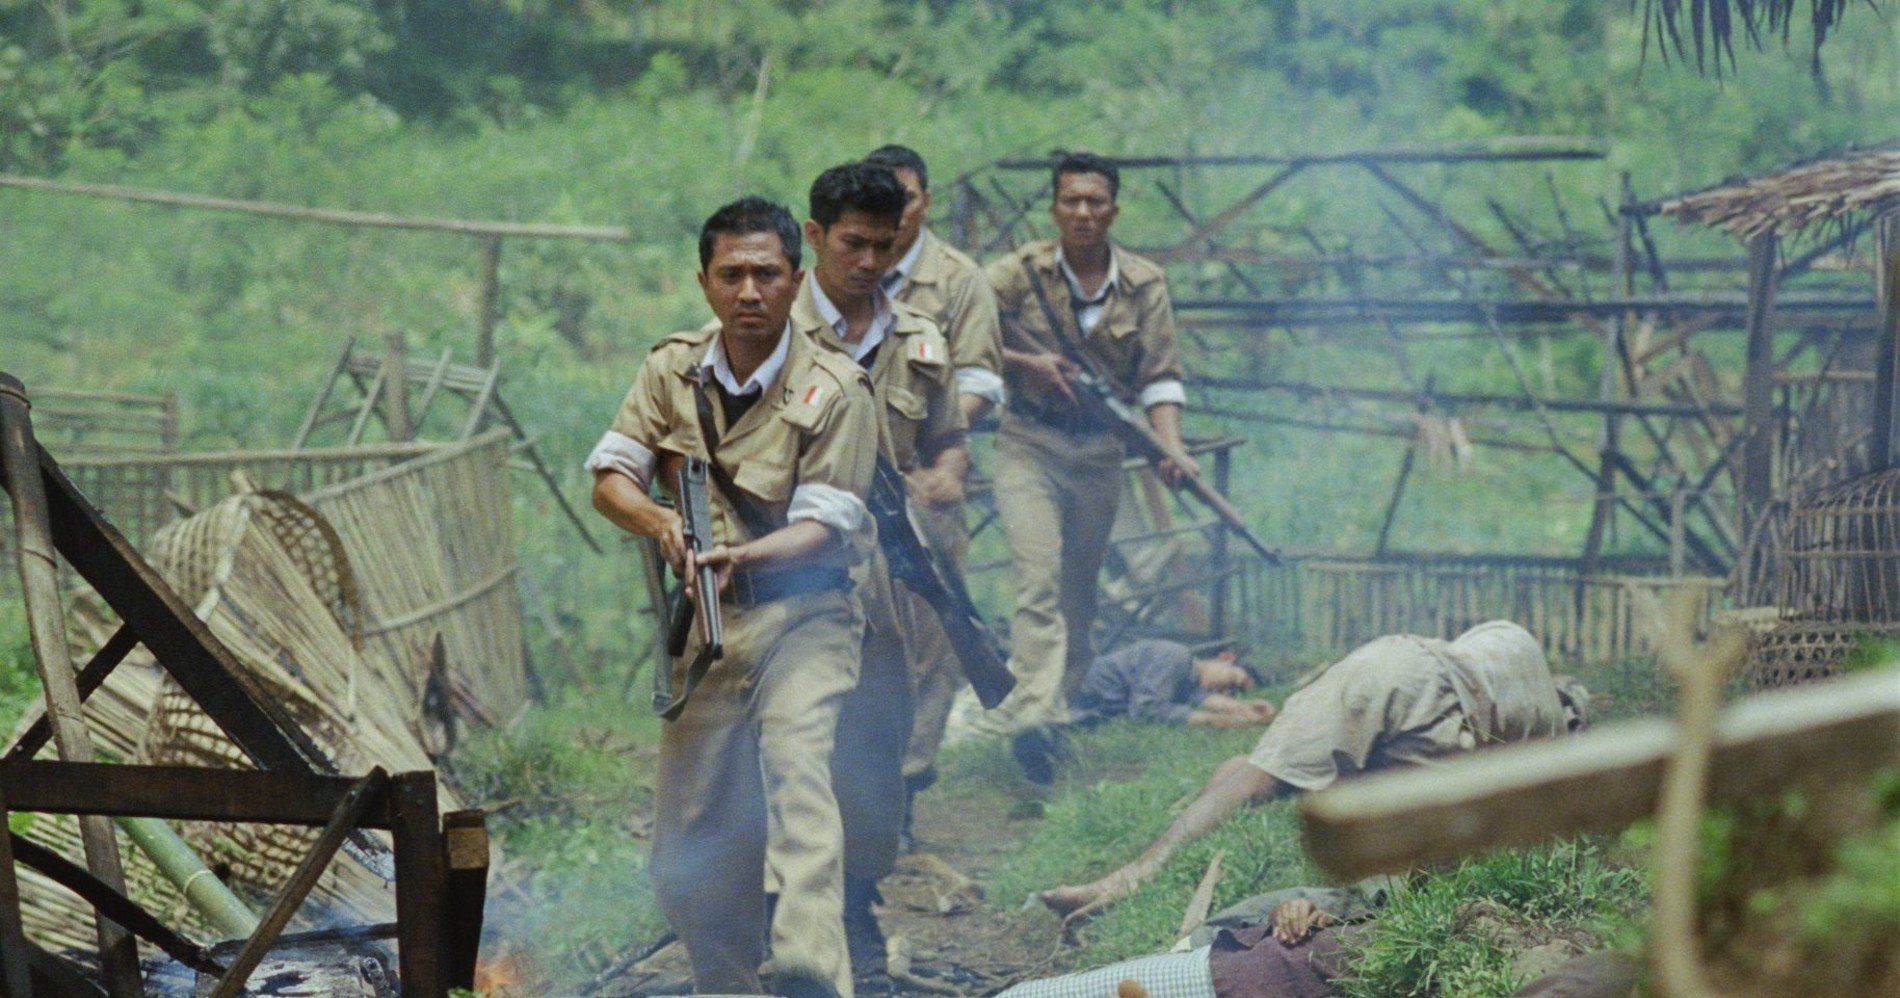 Hypeabis 10 Film Bertema Pahlawan Nasional And Perjuangan Kemerdekaan Cocok Ditonton Menjelang 